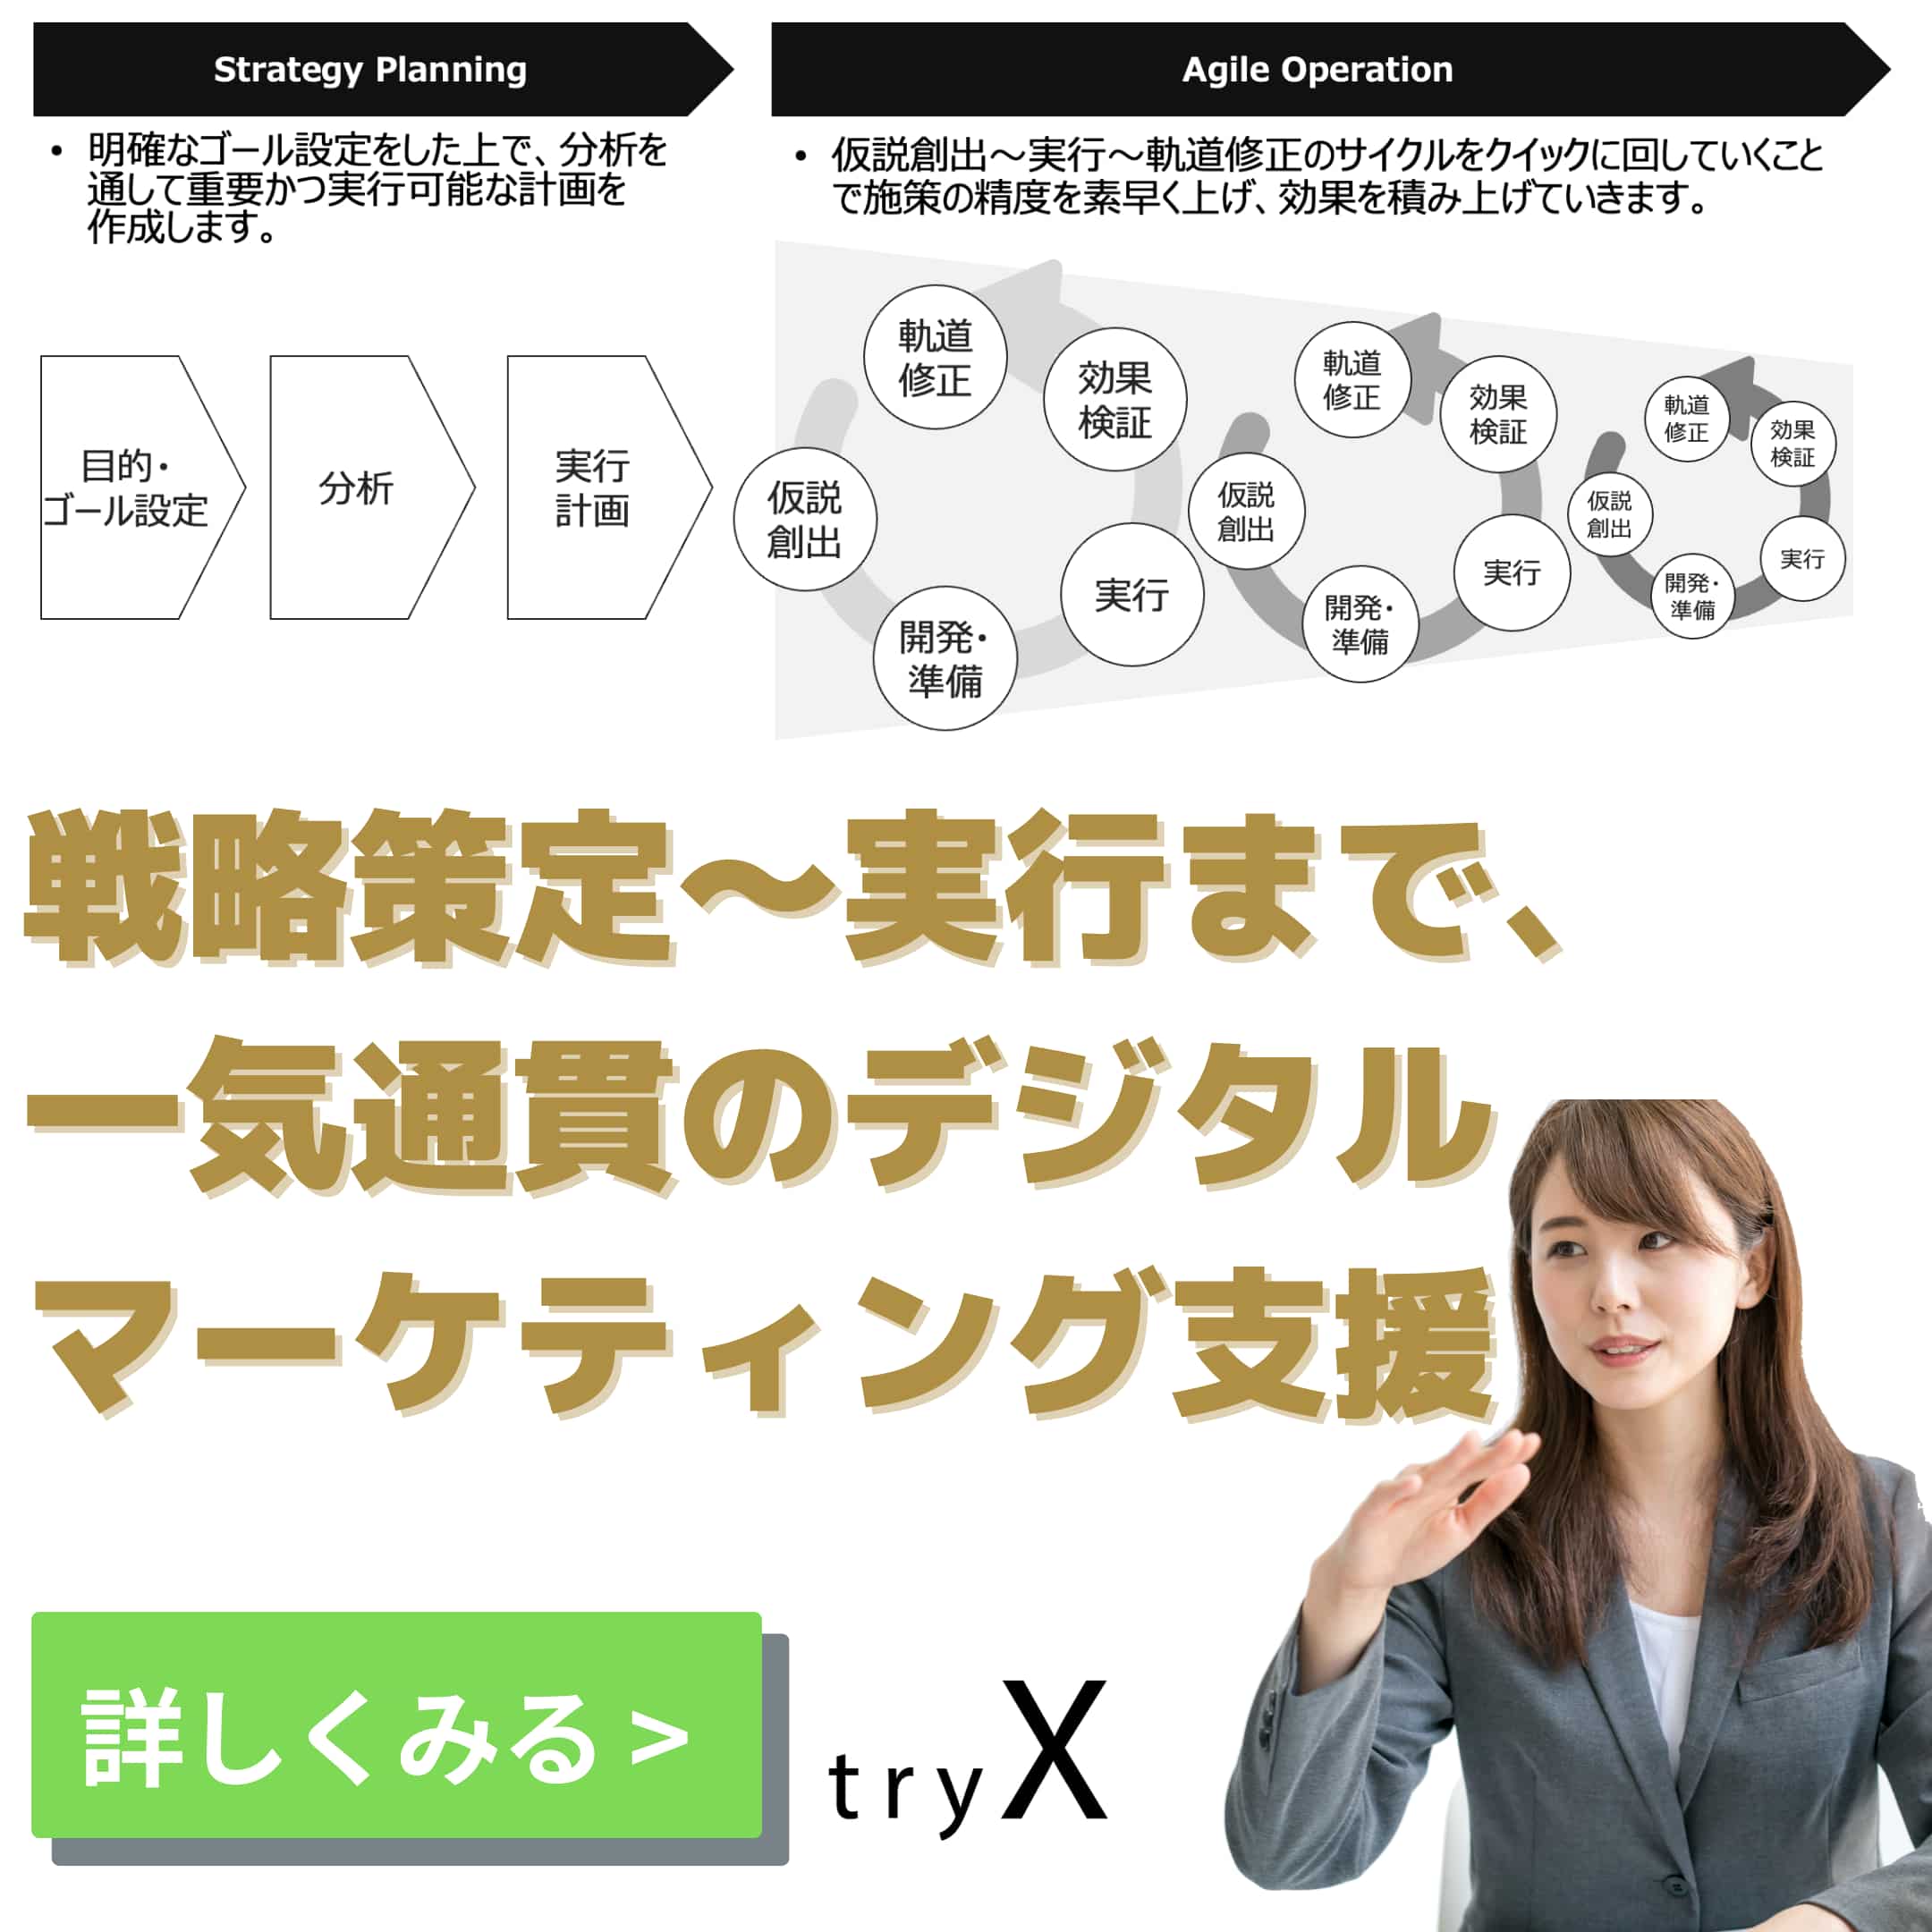 戦略策定〜実行支援まで、一貫したデジタルマーケティング支援なら株式会社tryX